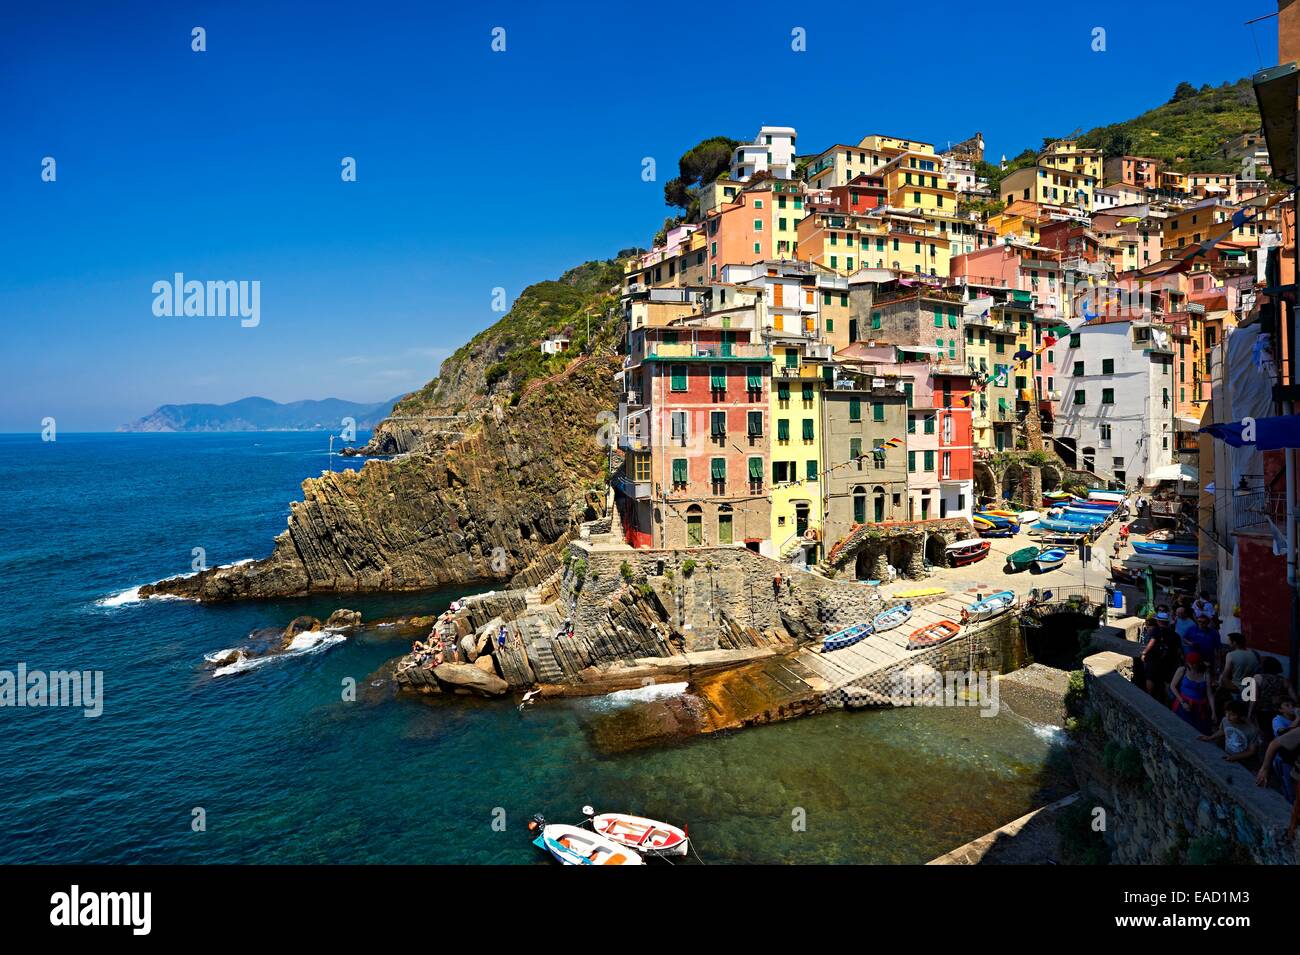 Fishing port of Riomaggiore, Riomaggiore, Cinque Terre, Liguria, Italy Stock Photo